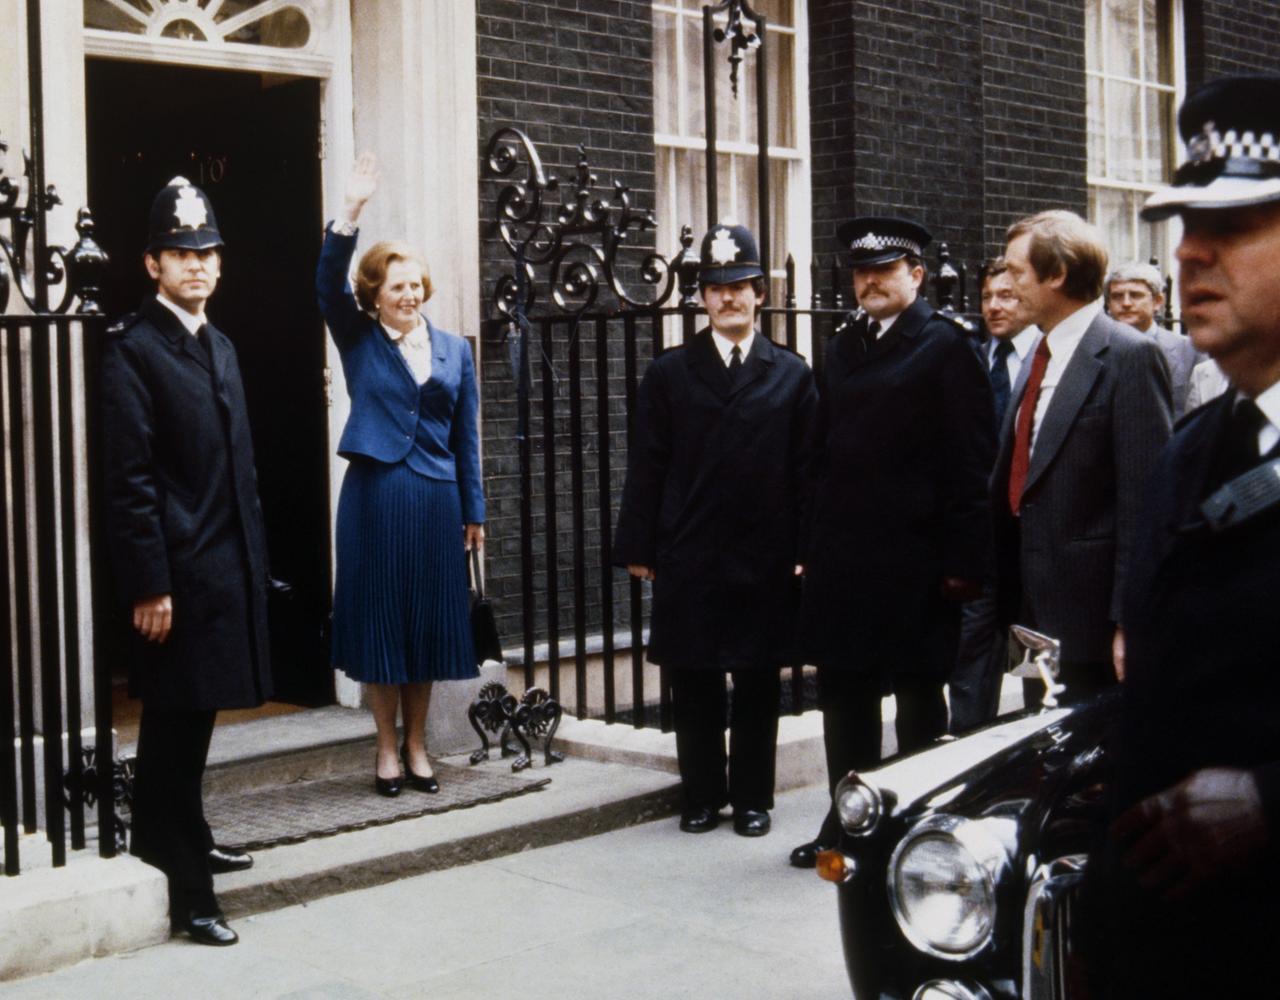 Margaret Thatcher steht, umringt von Polizisten, am Eingang der Downing Street Nr. 10 und winkt Personen die im Bild nicht zu sehen sind.